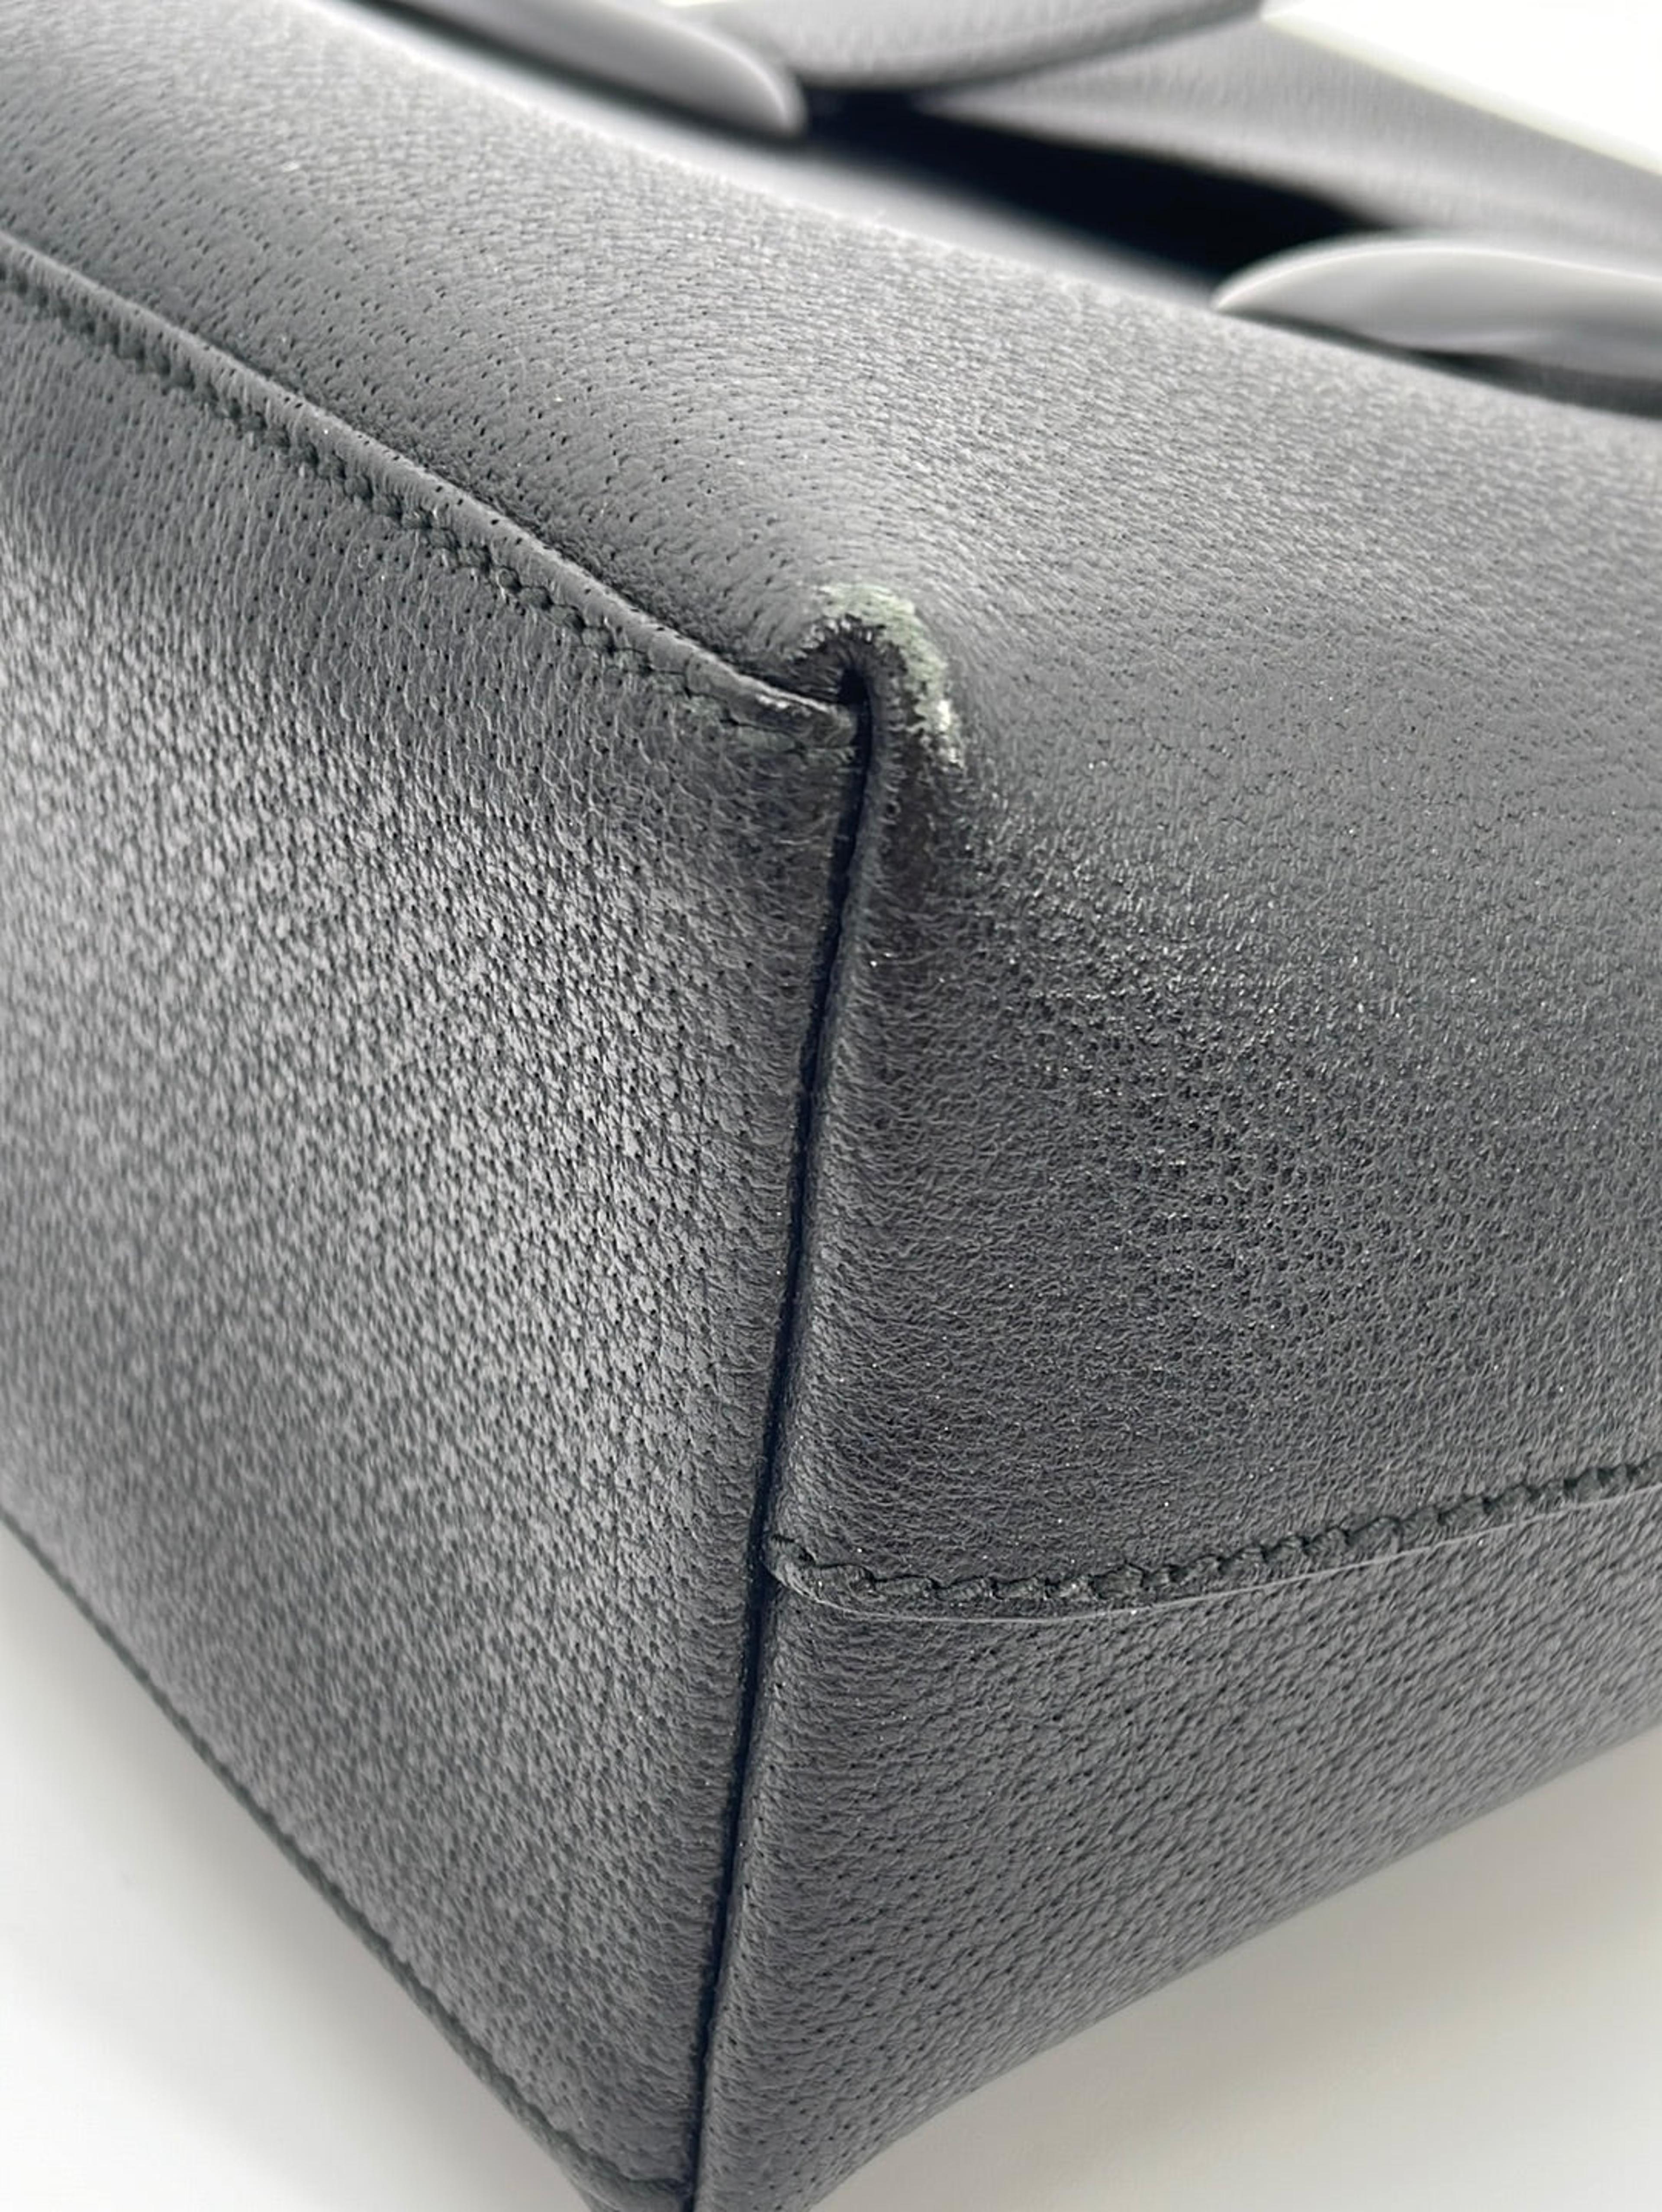 Vintage Gucci Black Leather Large Shoulder Bag 21230451 081523